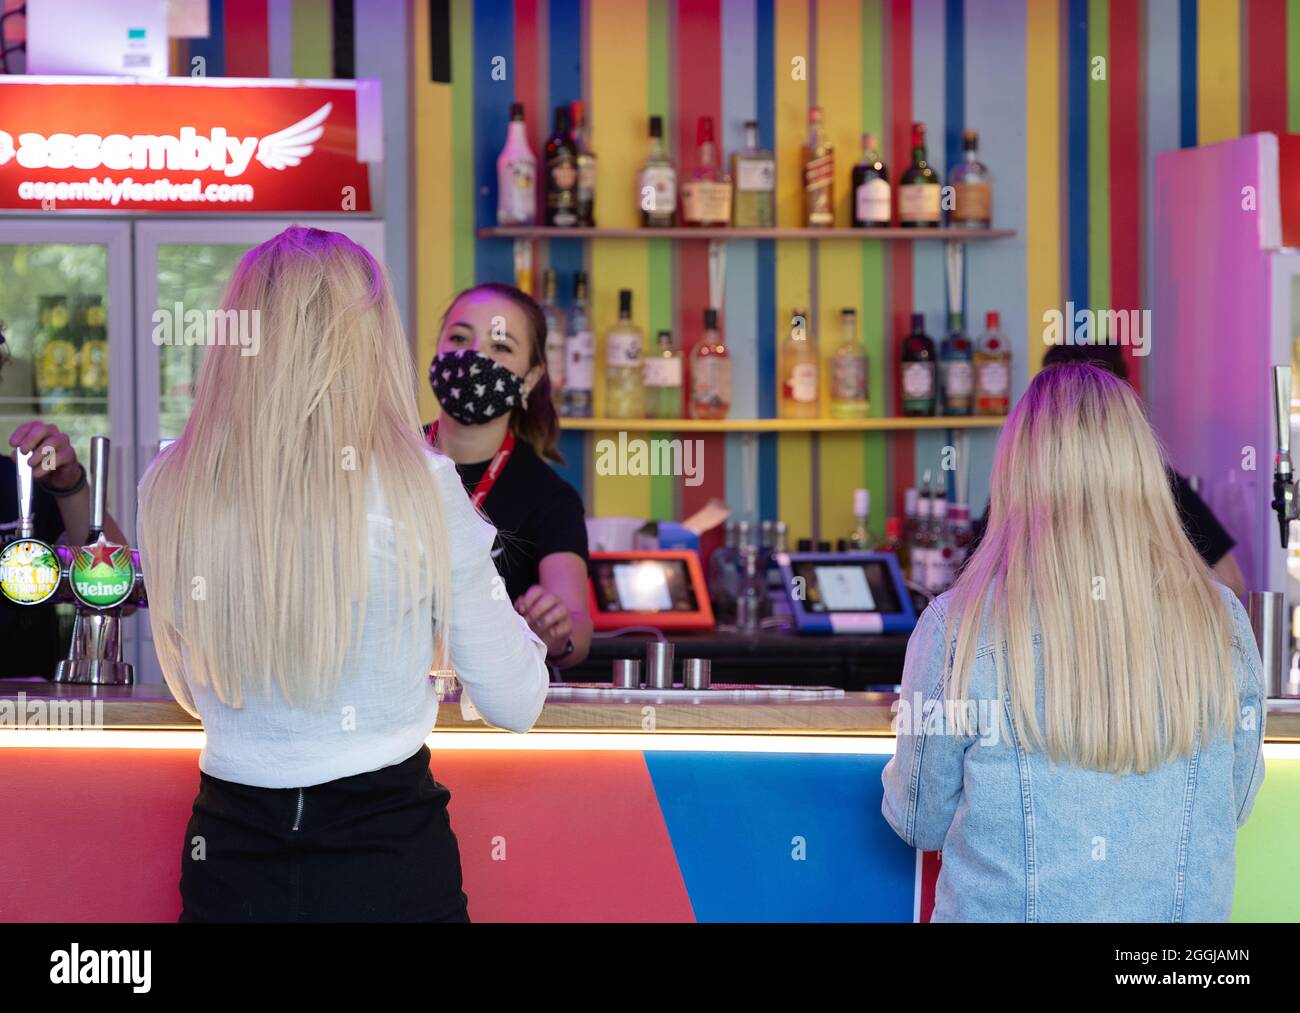 Zwei Frauen, die an einer Bar Alkoholgetränke kaufen, Rückansicht von 2 blonden Frauen, im Edinburgh Fringe, Edinburgh, Schottland, Großbritannien Stockfoto